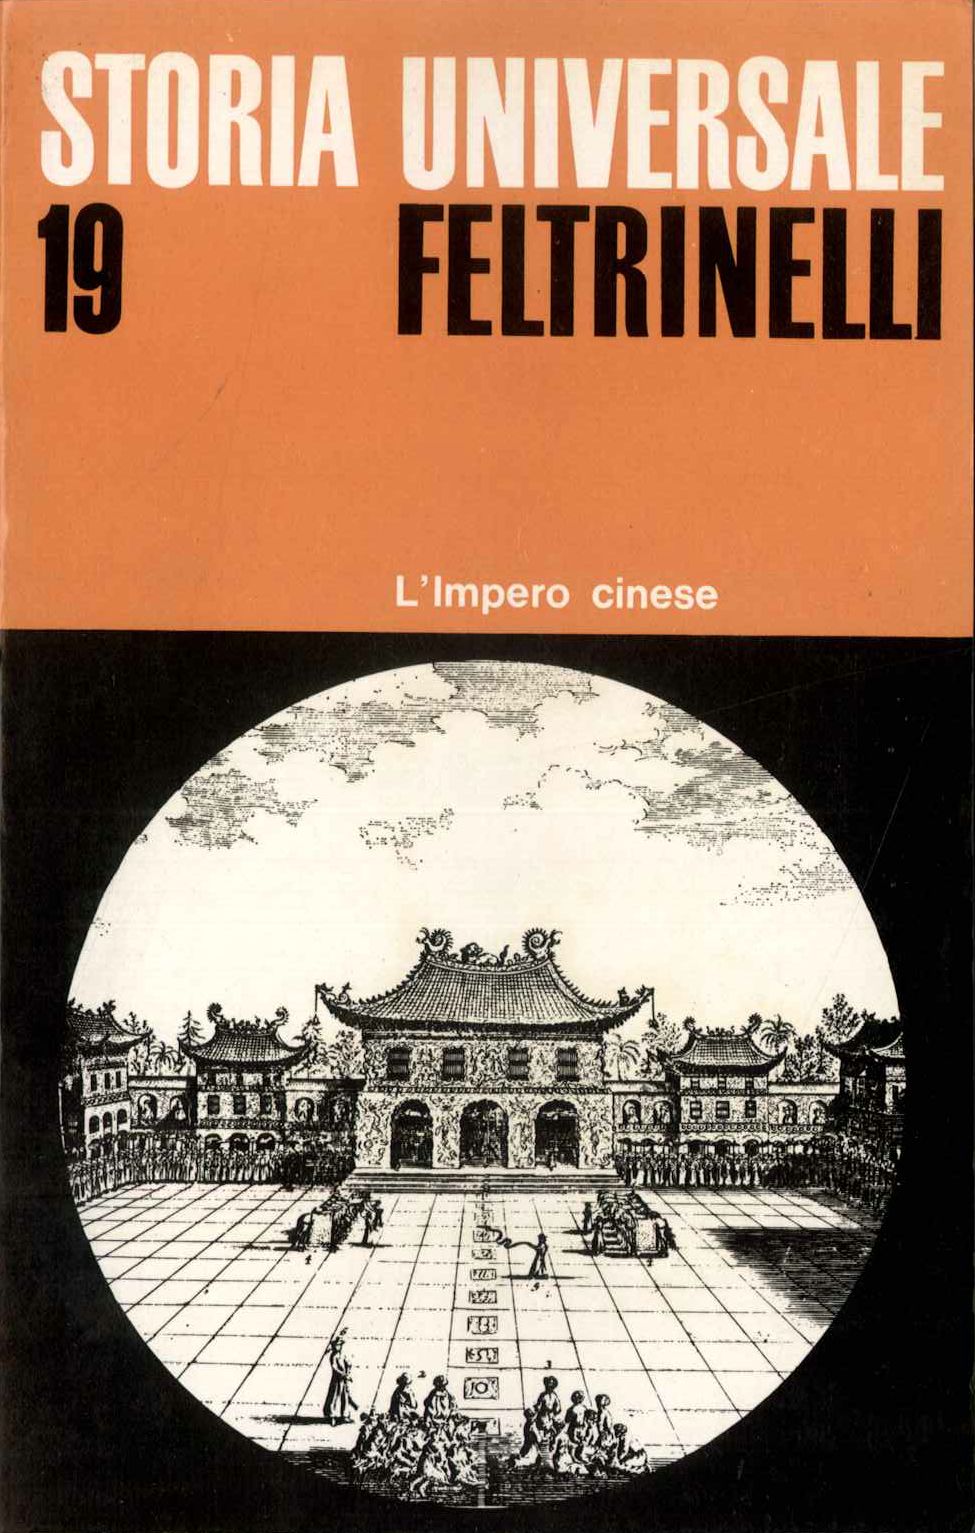 S.U.F. Vol. 19. L'Impero cinese